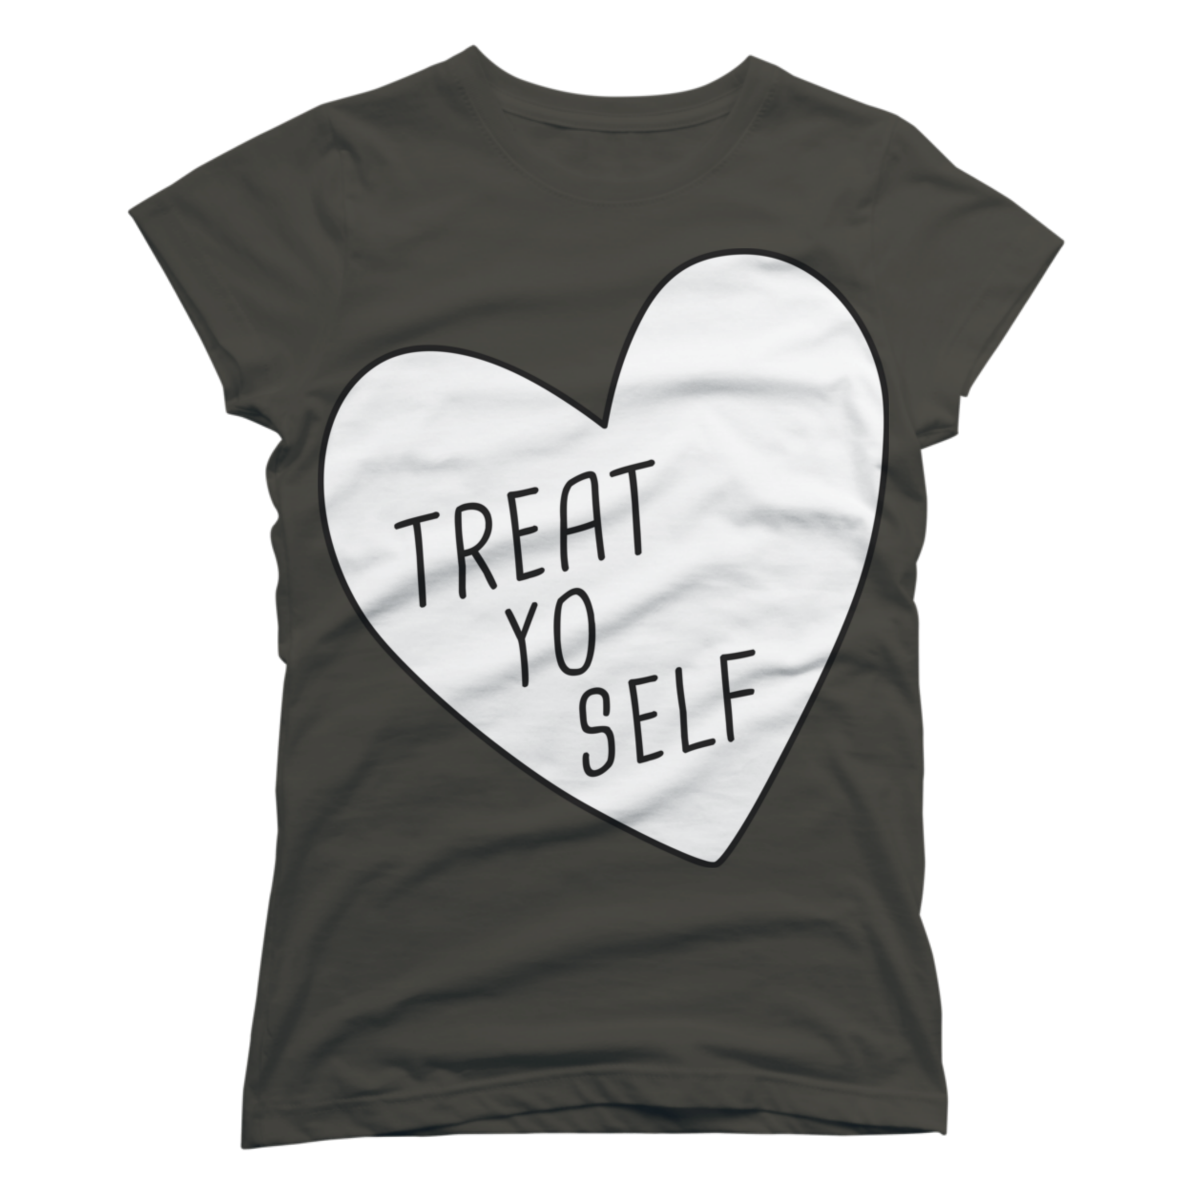 treat yo self shirt